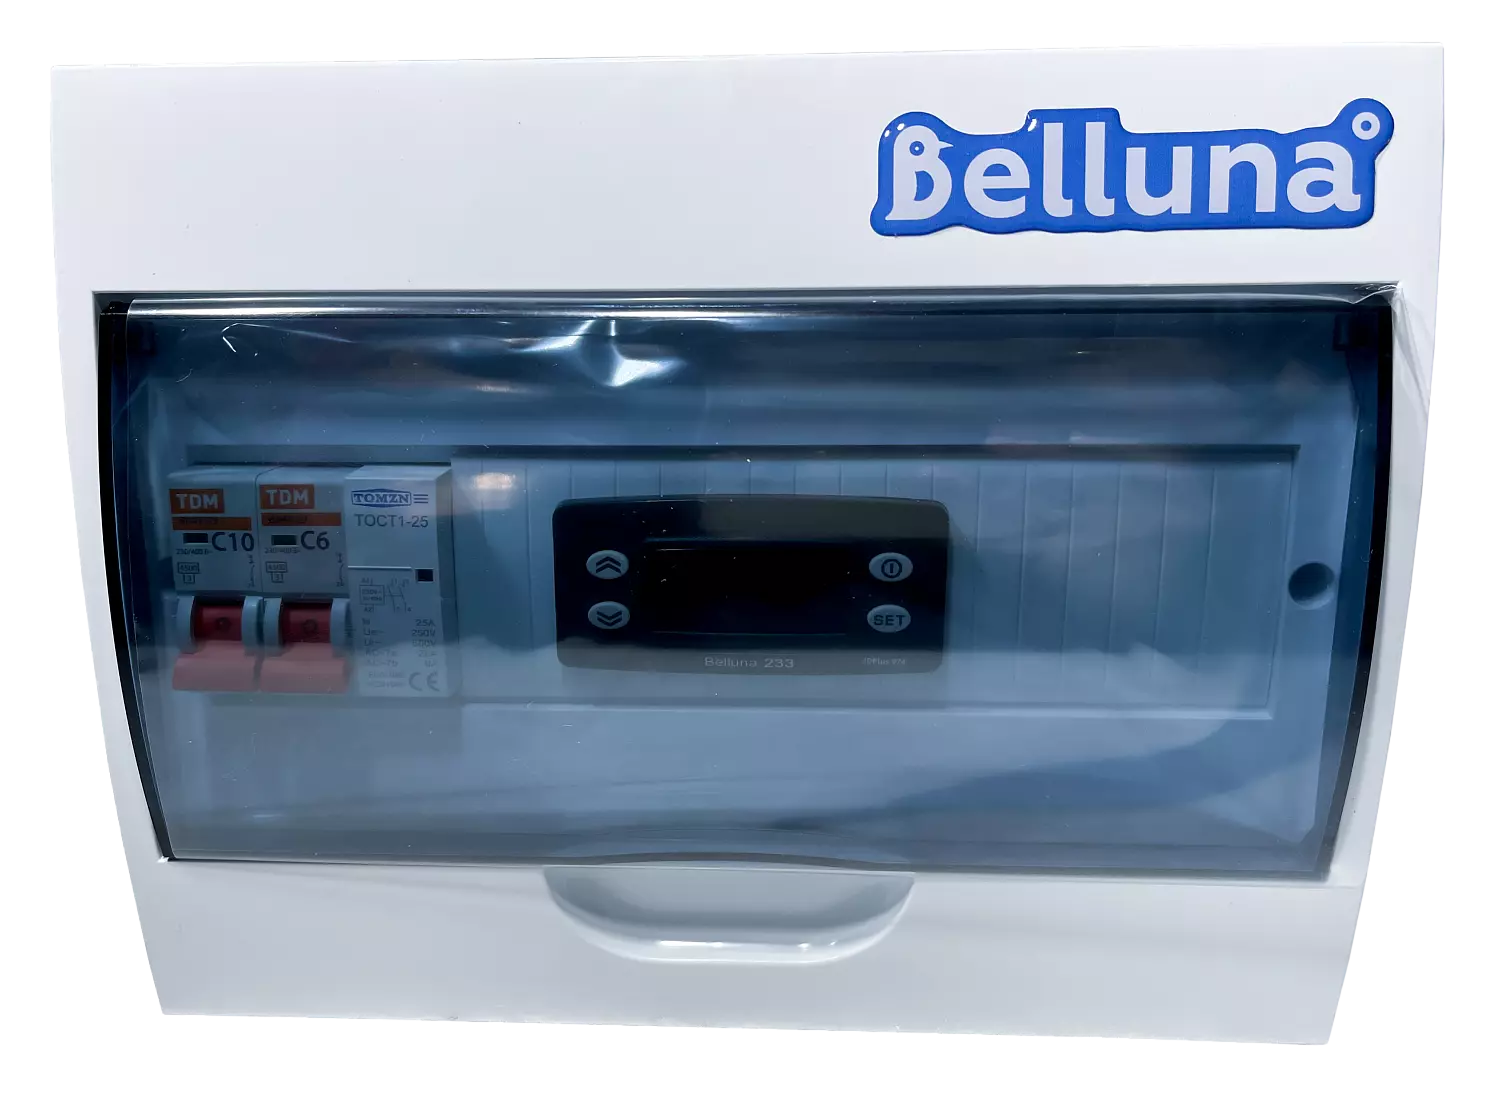 сплит-система Belluna U102-1 Санкт-Петербург